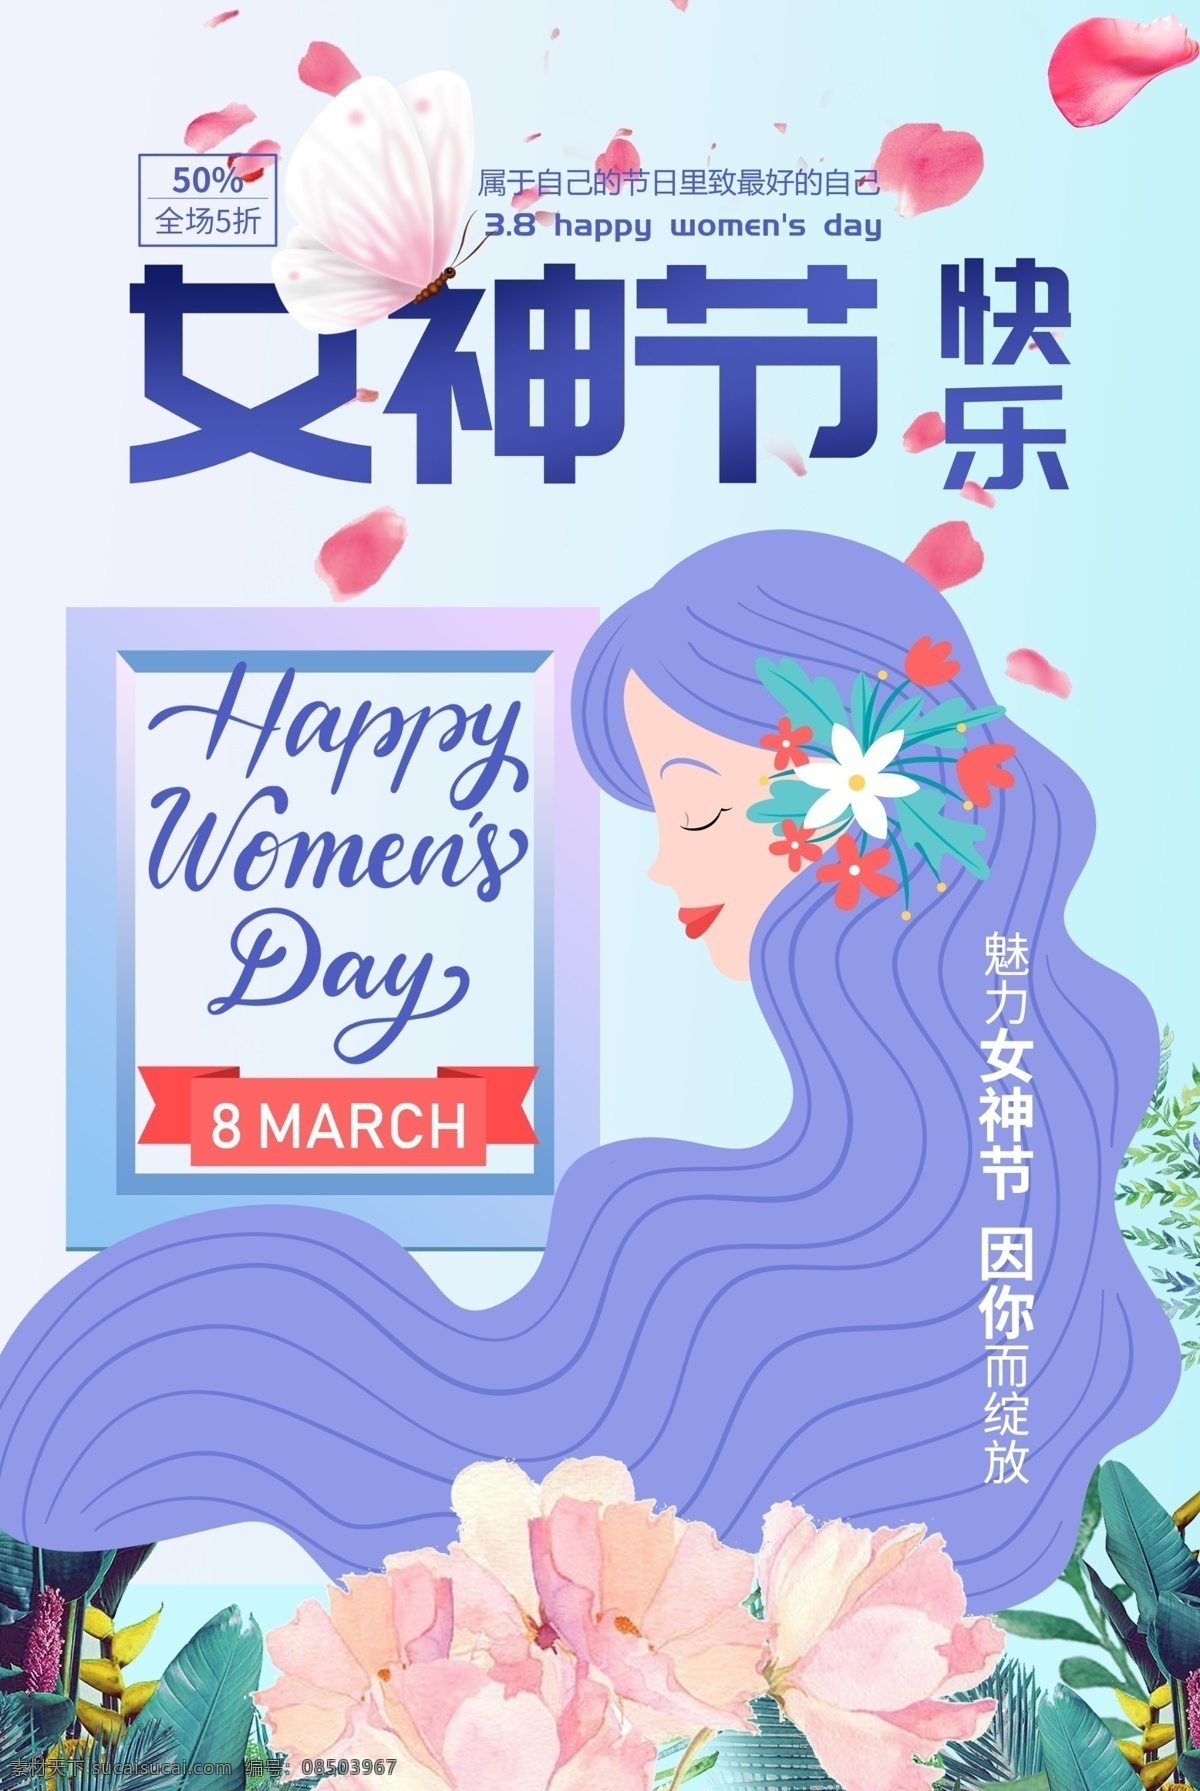 女神节快乐 女神节 女人节 海报 插画海报 三八妇女节 招贴设计